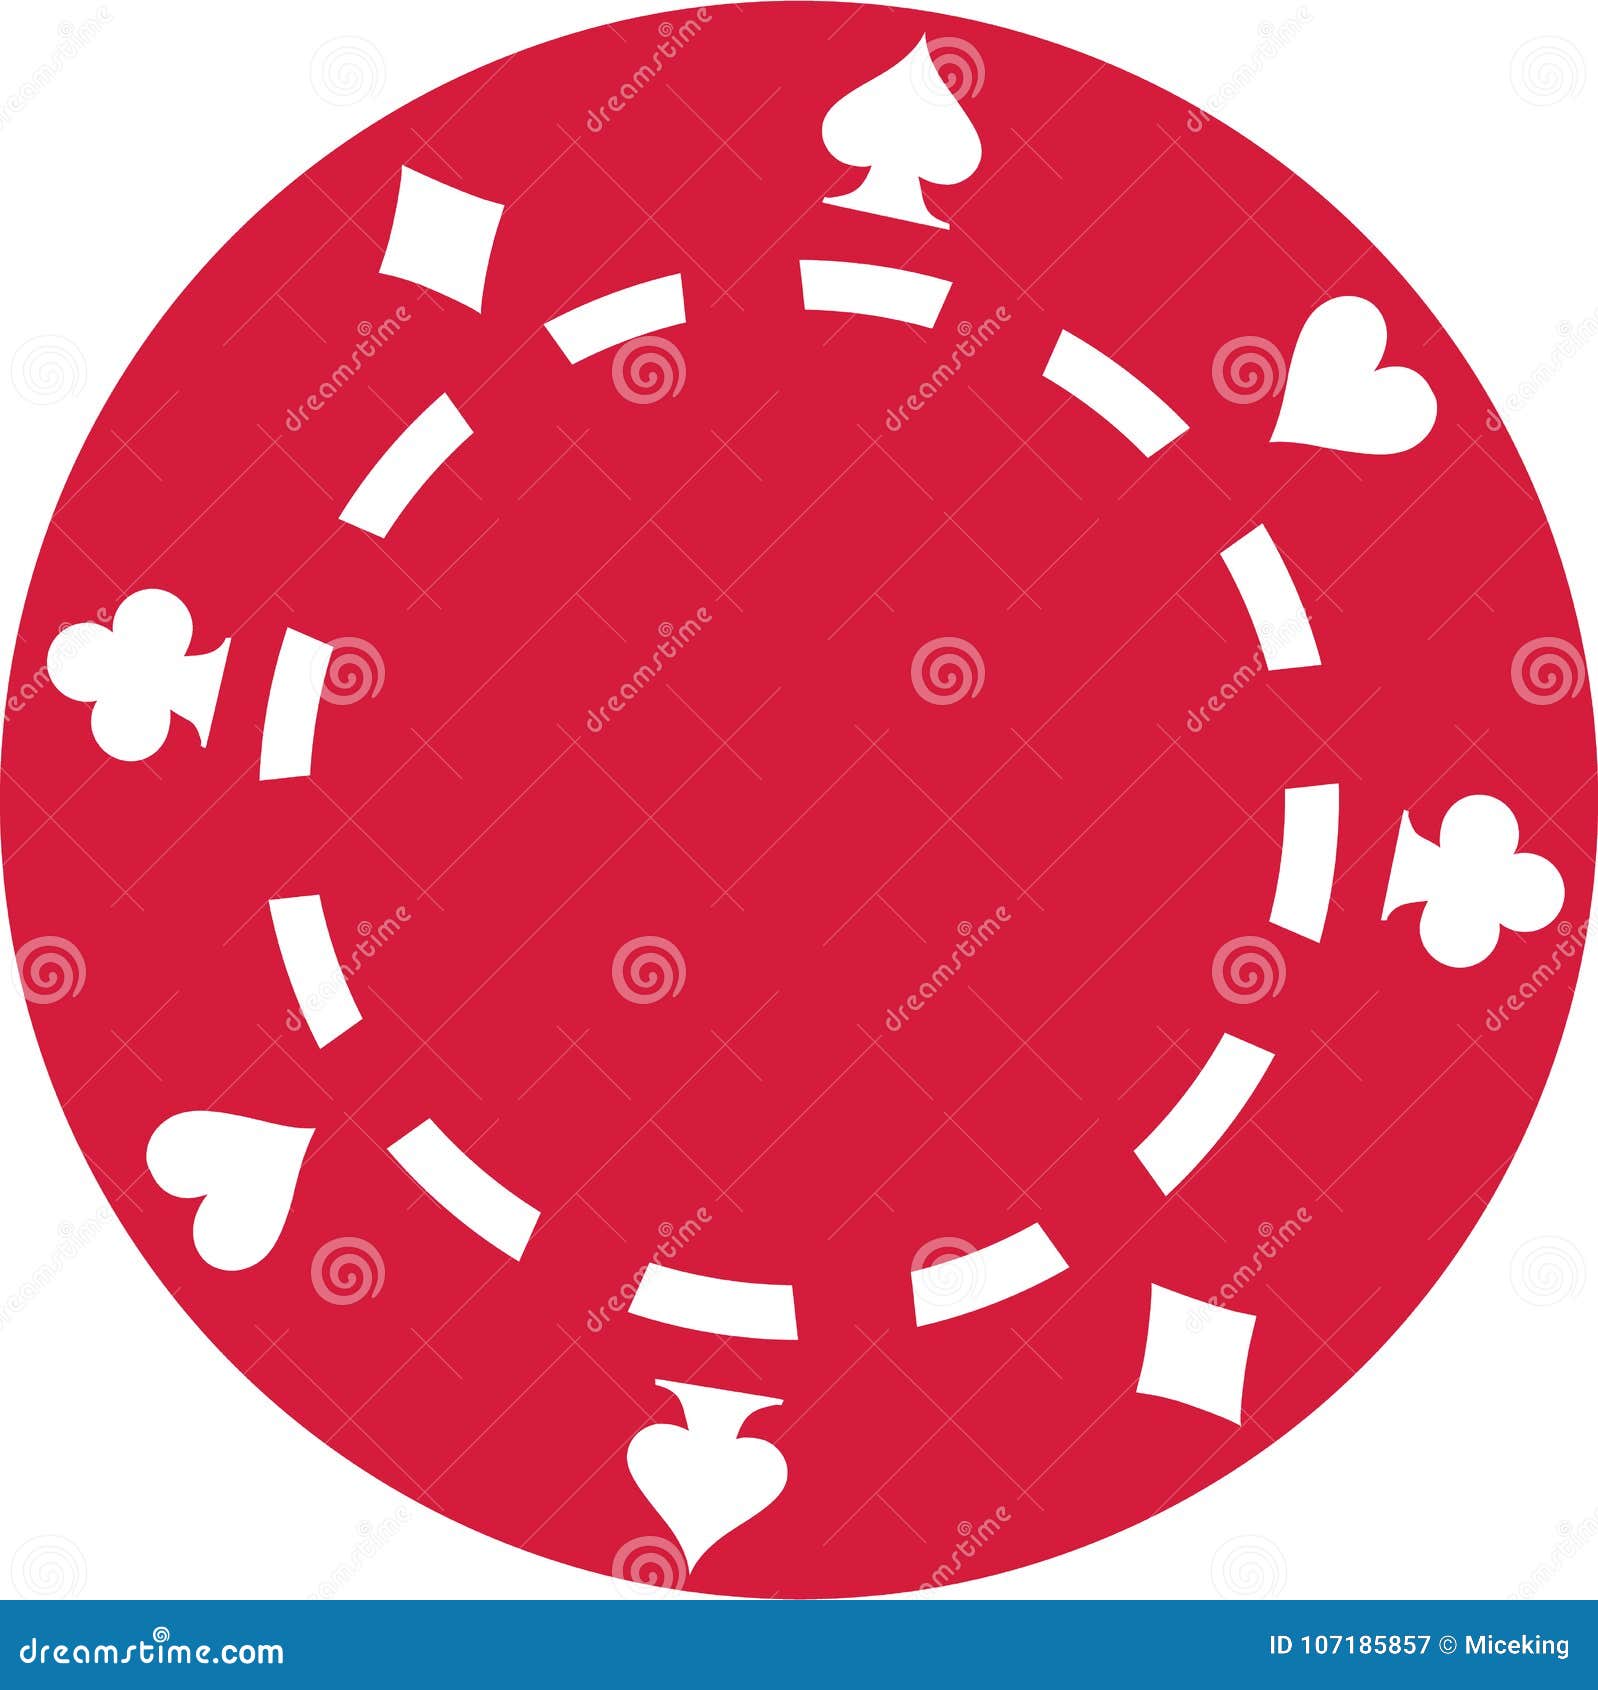 red poker gambling chip